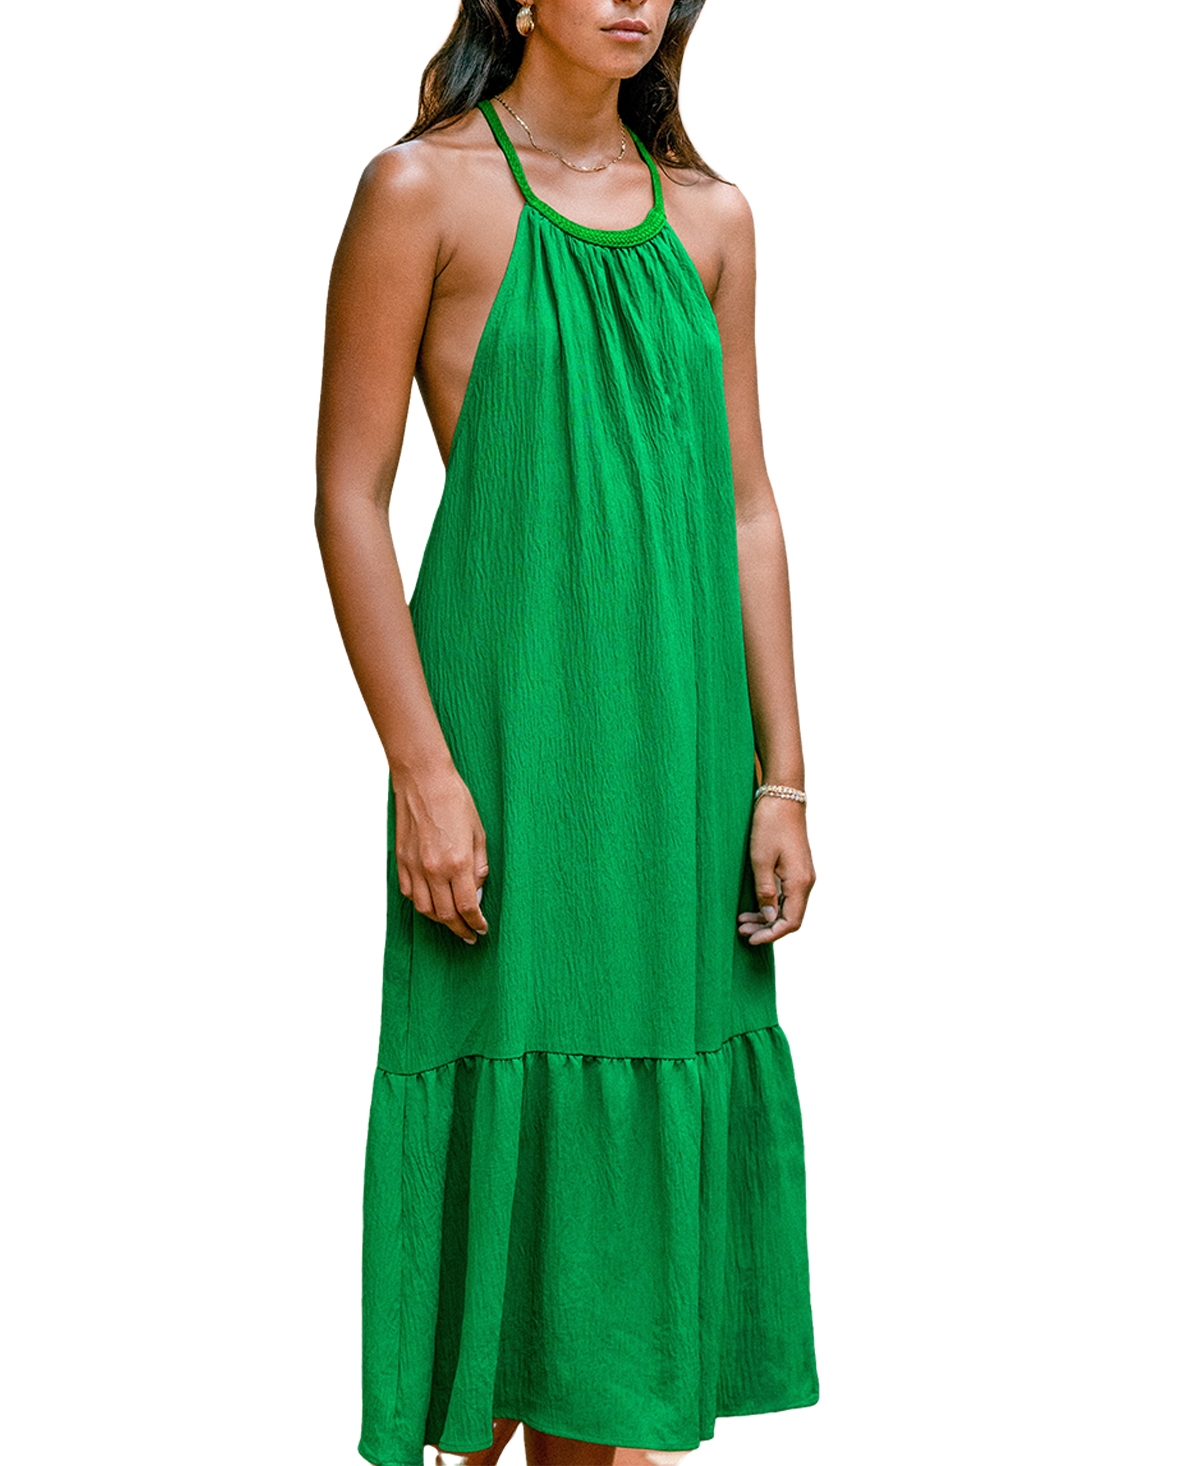 Women's Emerald Green Backless Maxi Beach Dress - Dark green